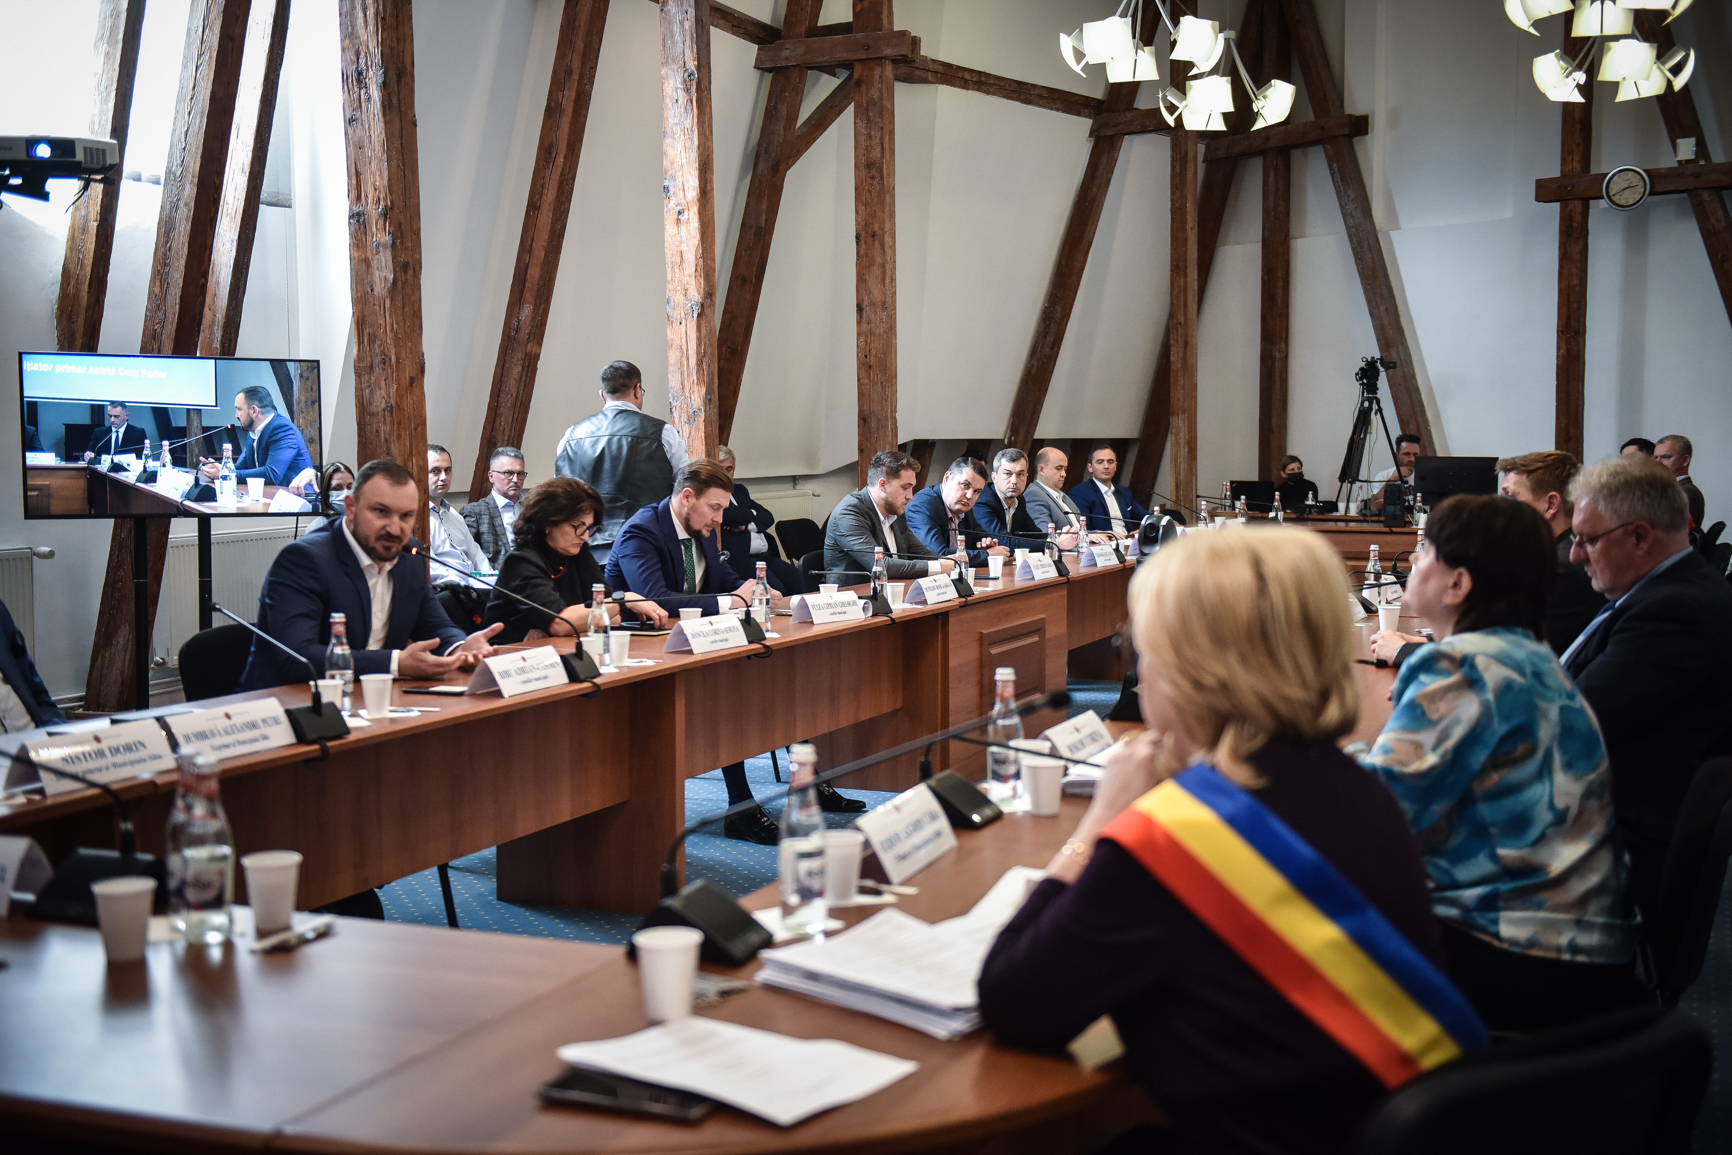 USR propune o nouă comisie în Sibiu: cea pentru mobilitate alternativă